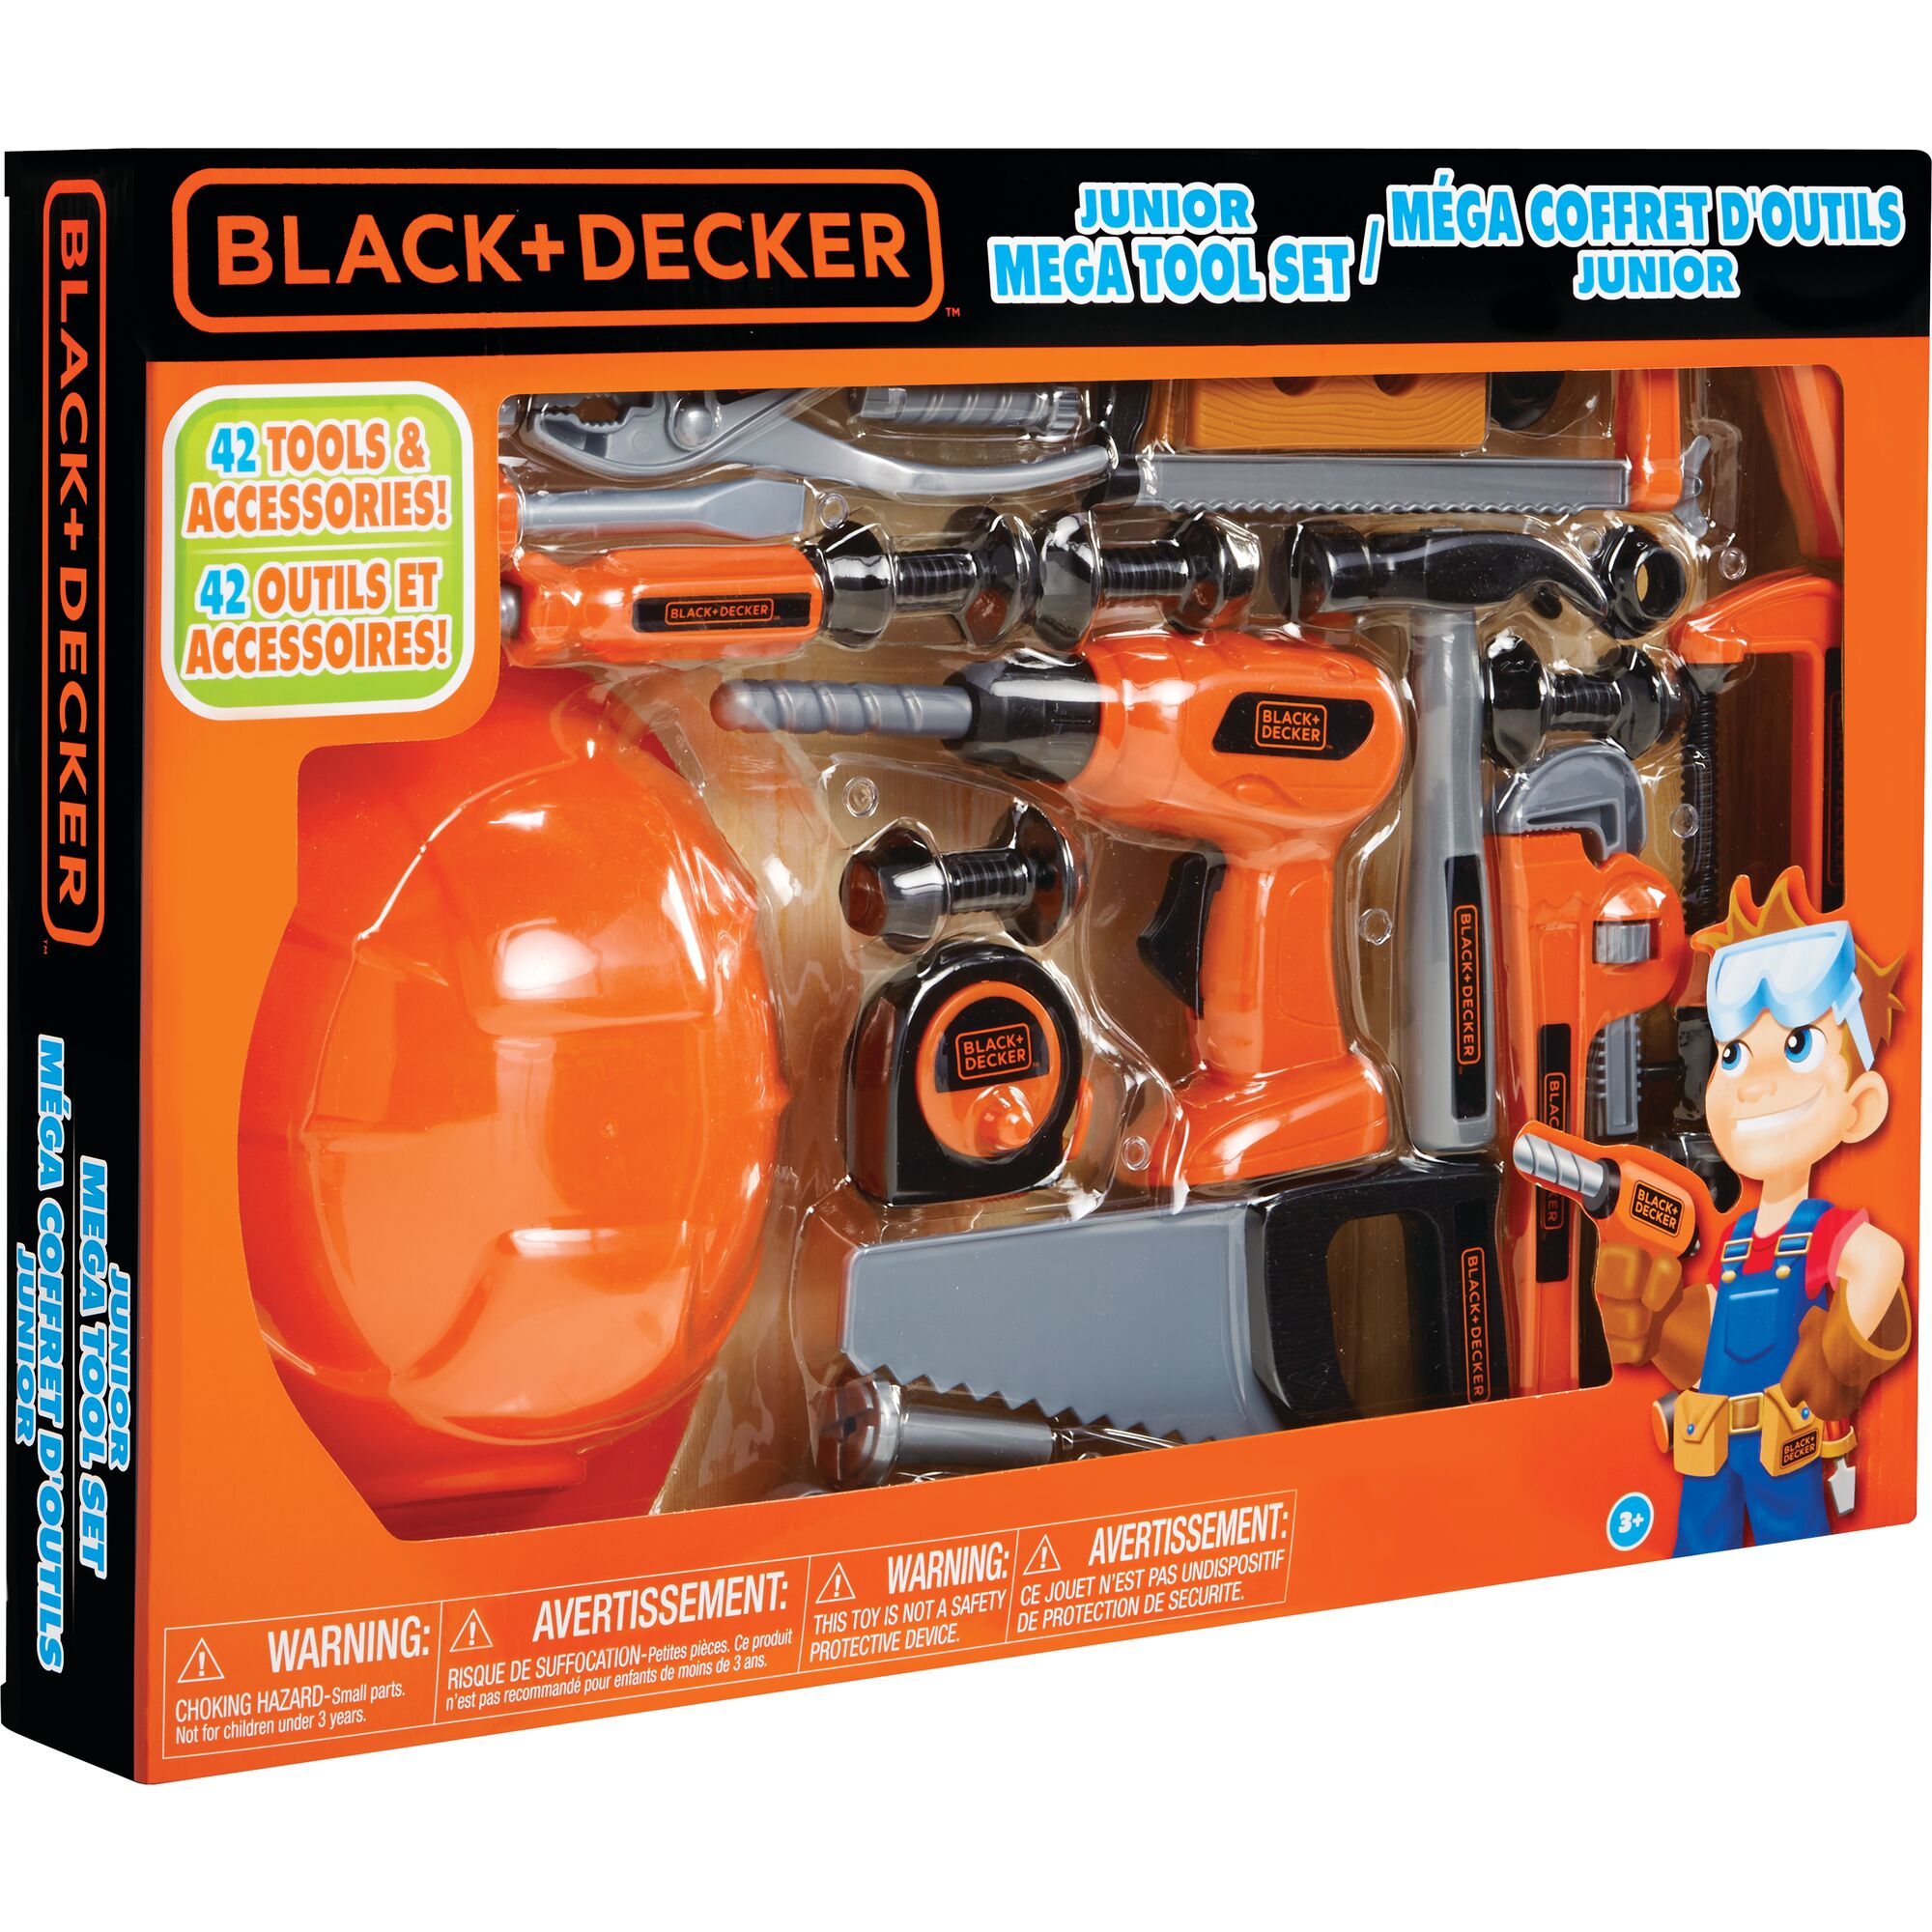 Black & Decker Black Learning & Development Toys